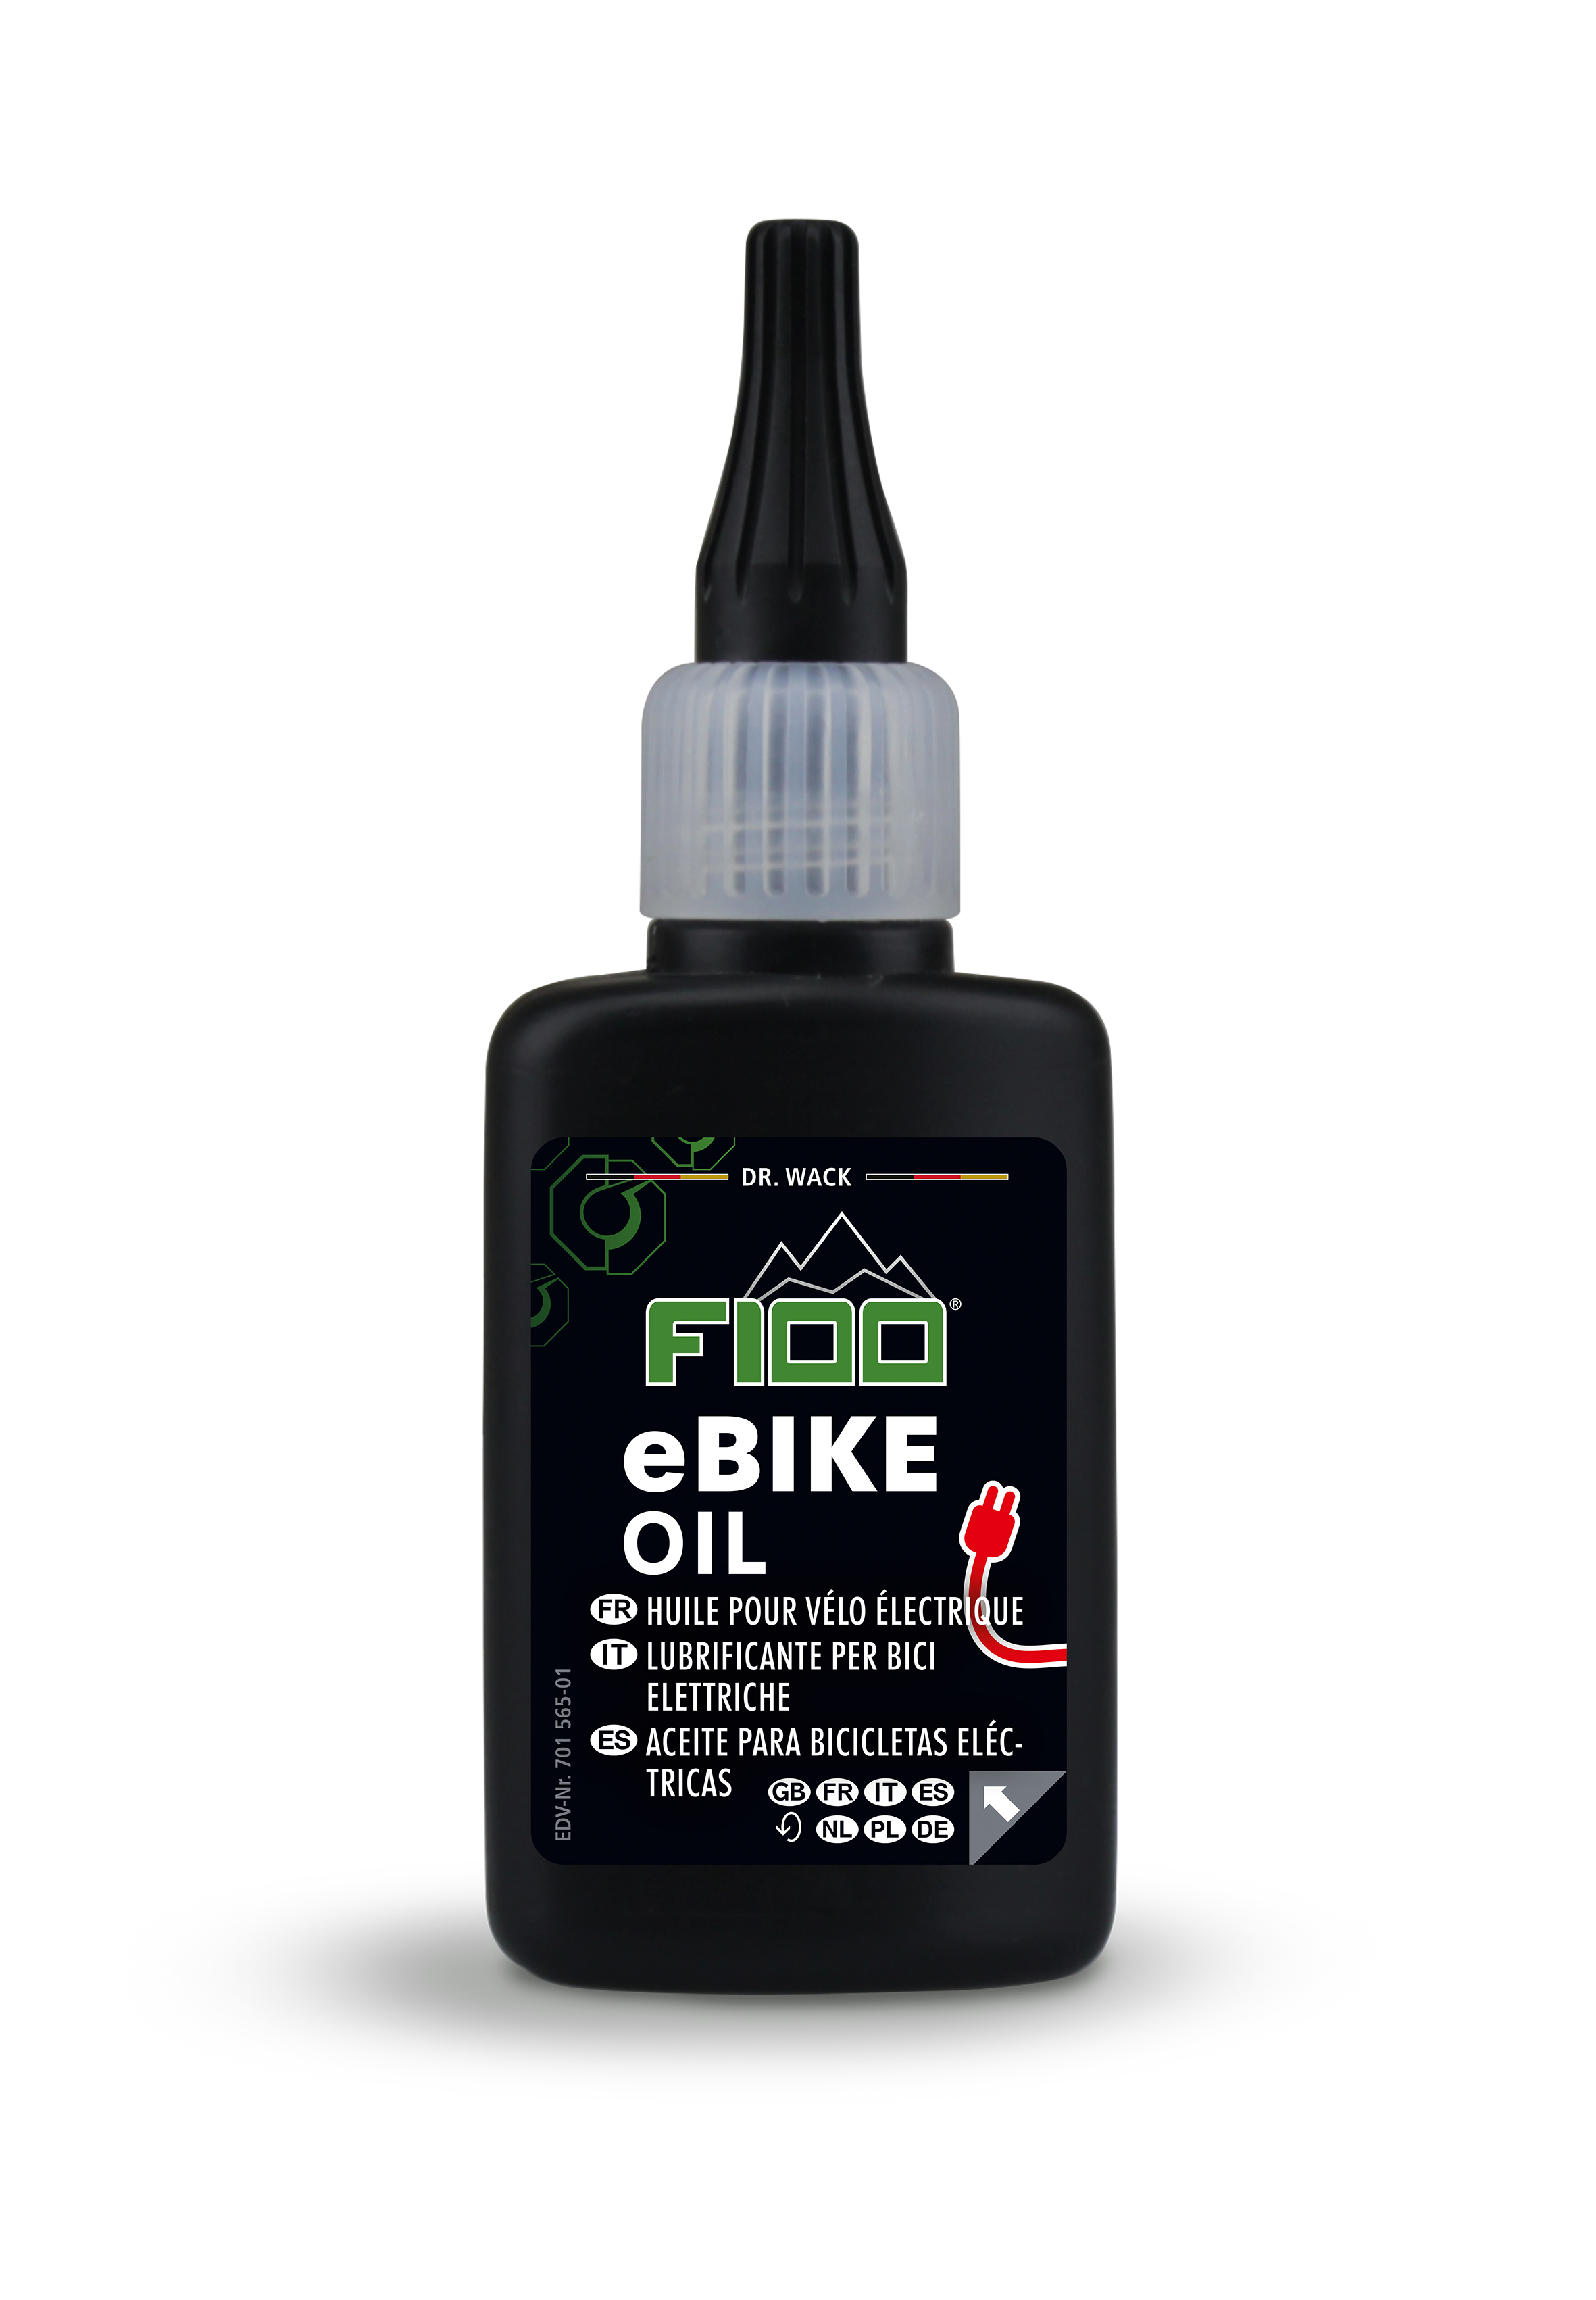 F100 eBike Oil